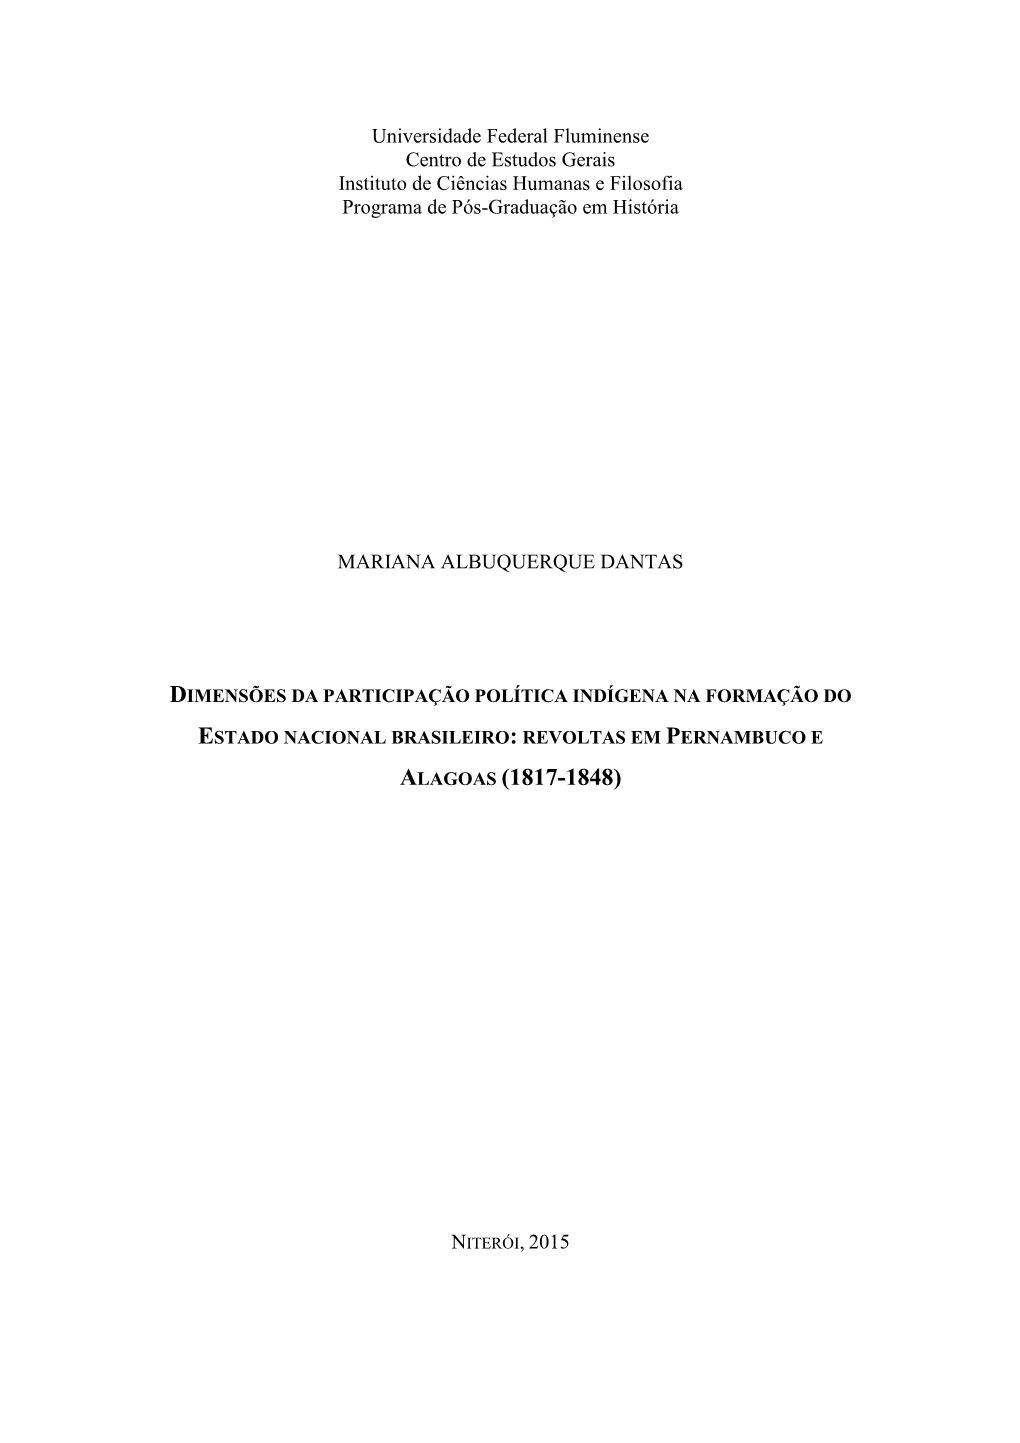 Dimensões Da Participação Política Indígena Na Formação Do Estado Nacional Brasileiro : Revoltas Em Pernambuco E Alagoas (1817-1848) / Mariana Albuquerque Dantas